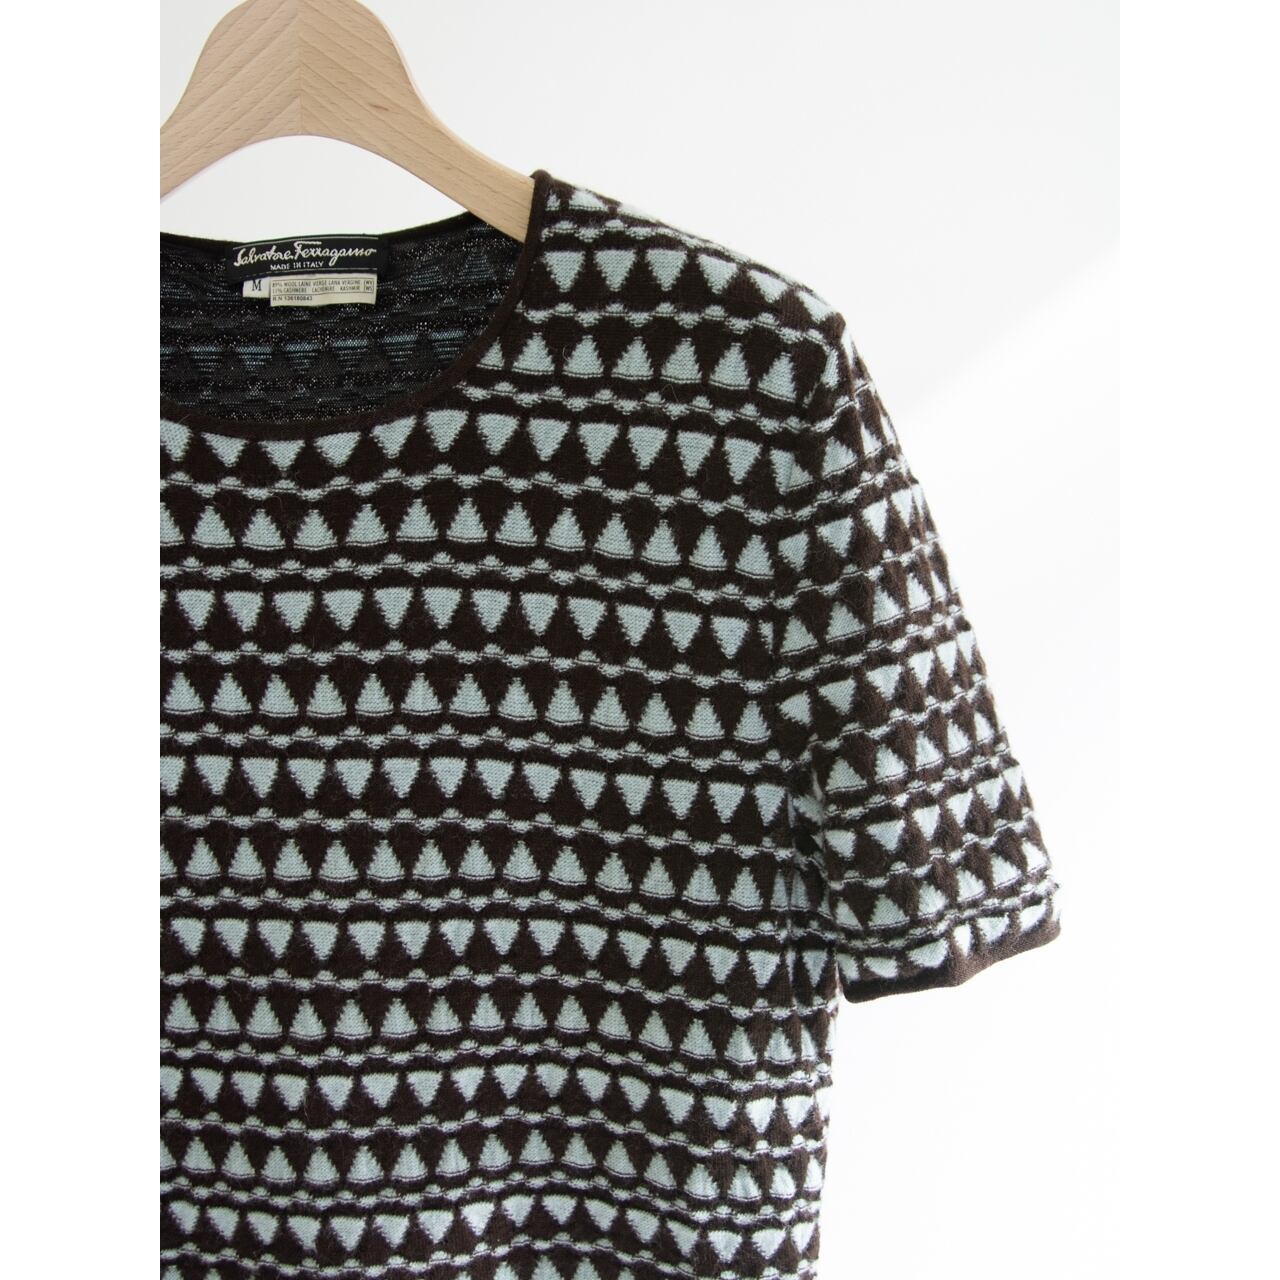 【Salvatore Ferragamo】Made in Italy Wool-Cashmere H/S Sweater（サルヴァトーレ フェラガモ イタリア製 半袖ウールカシミヤセーター ダブルフェイスニットプルオーバー）